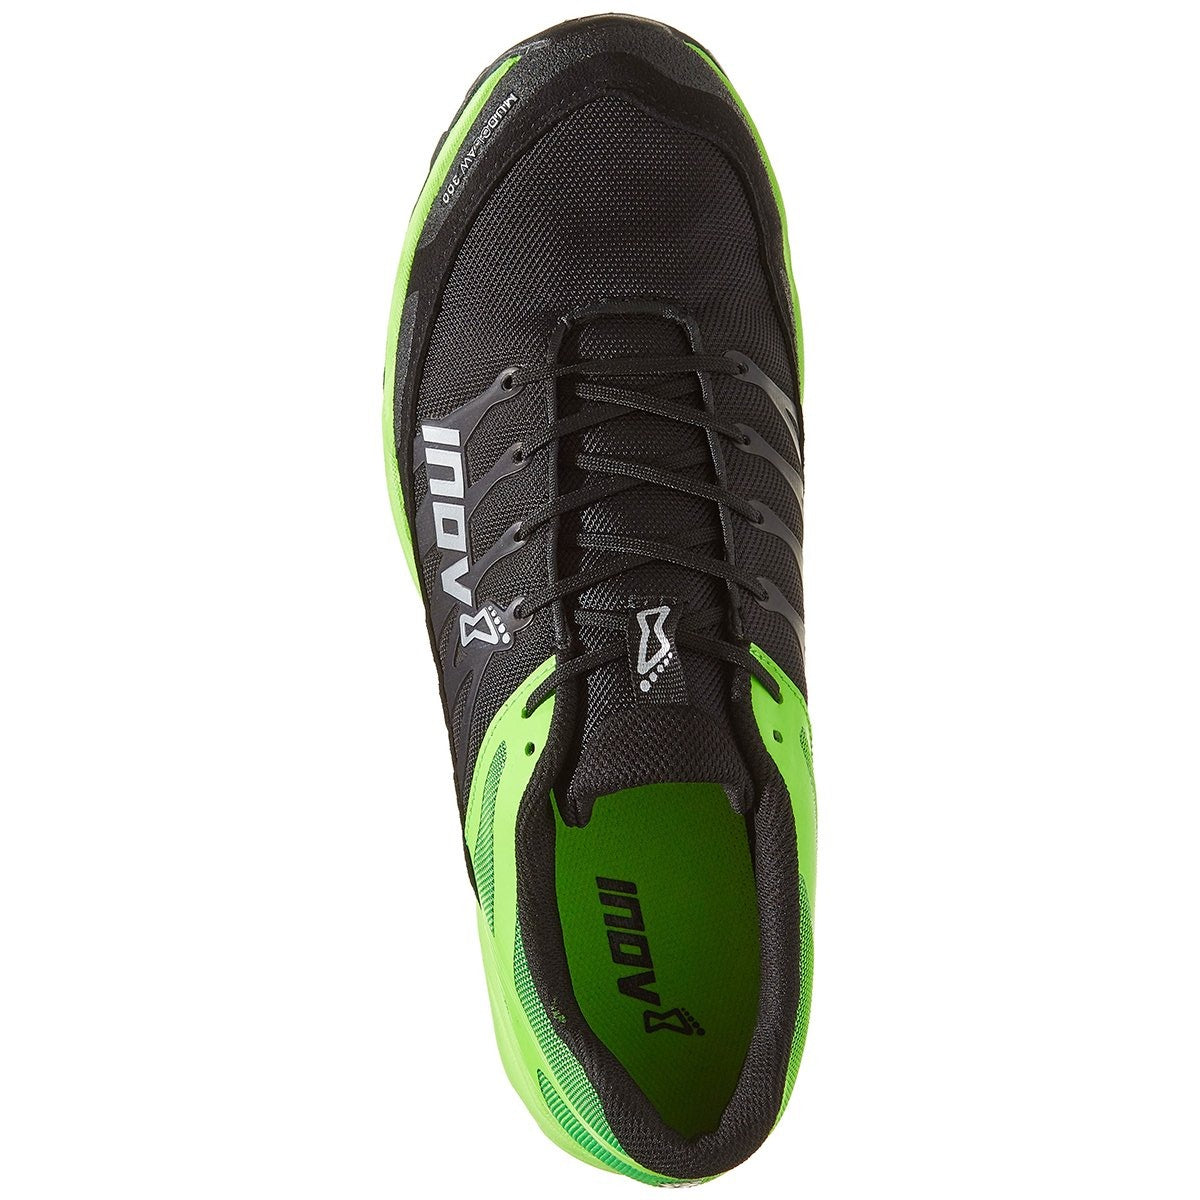 Inov-8 Mudclaw 300 by Inov-8 | Footwear - goHUNT Shop